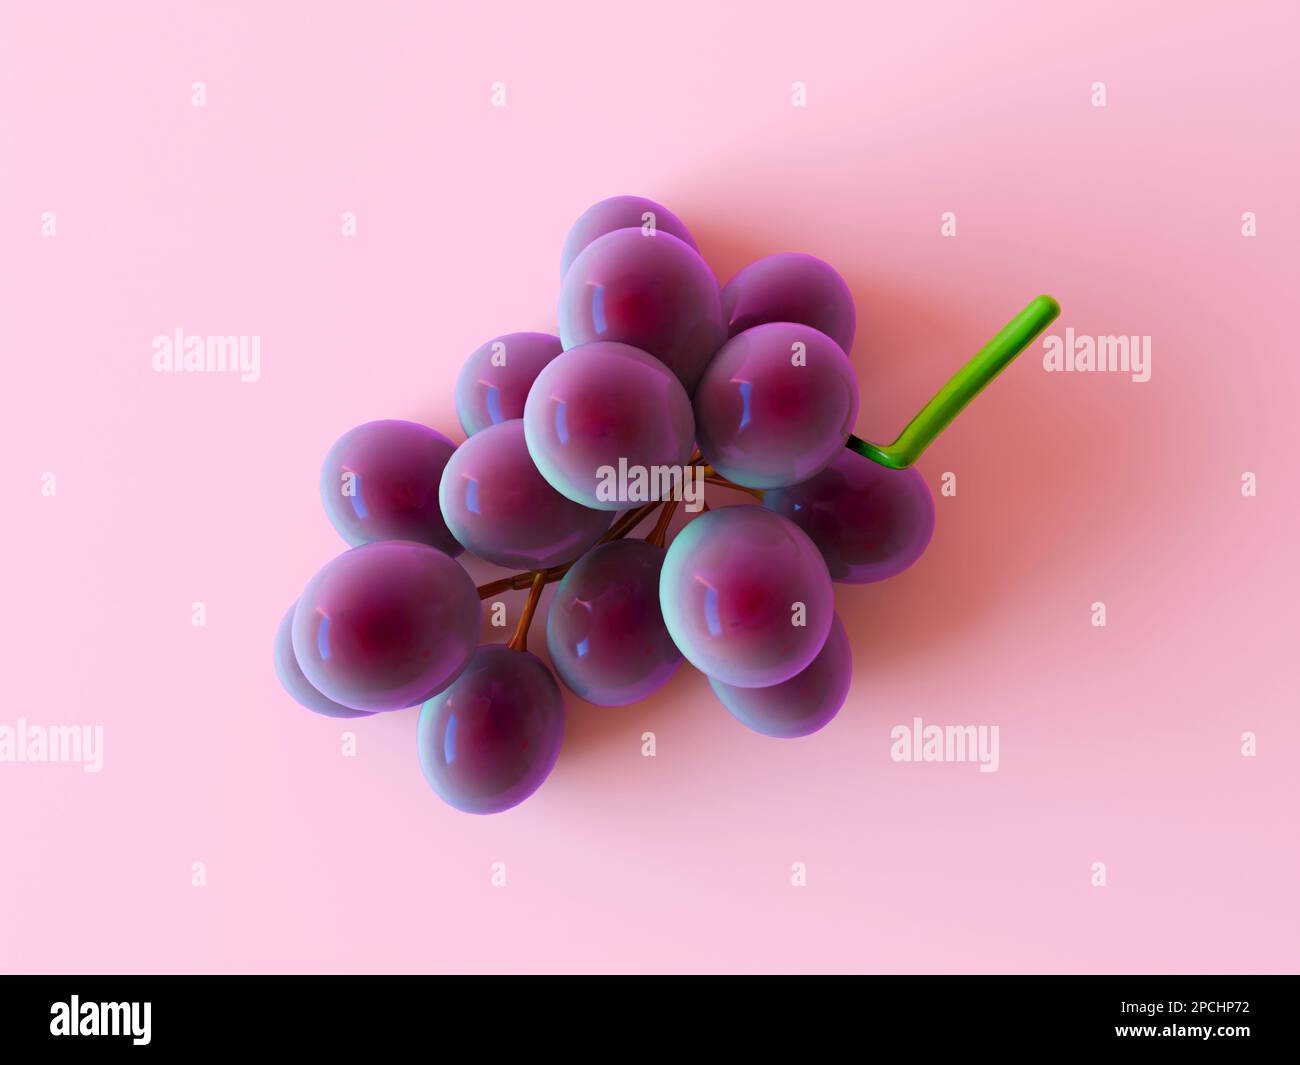 Schmackhafte Trauben isoliert auf pastellrosa Hintergrund. 3D-Darstellung rendern, Draufsicht, flach ablegen, Kopierbereich. Trauben realistische Zusammensetzung Stockfoto